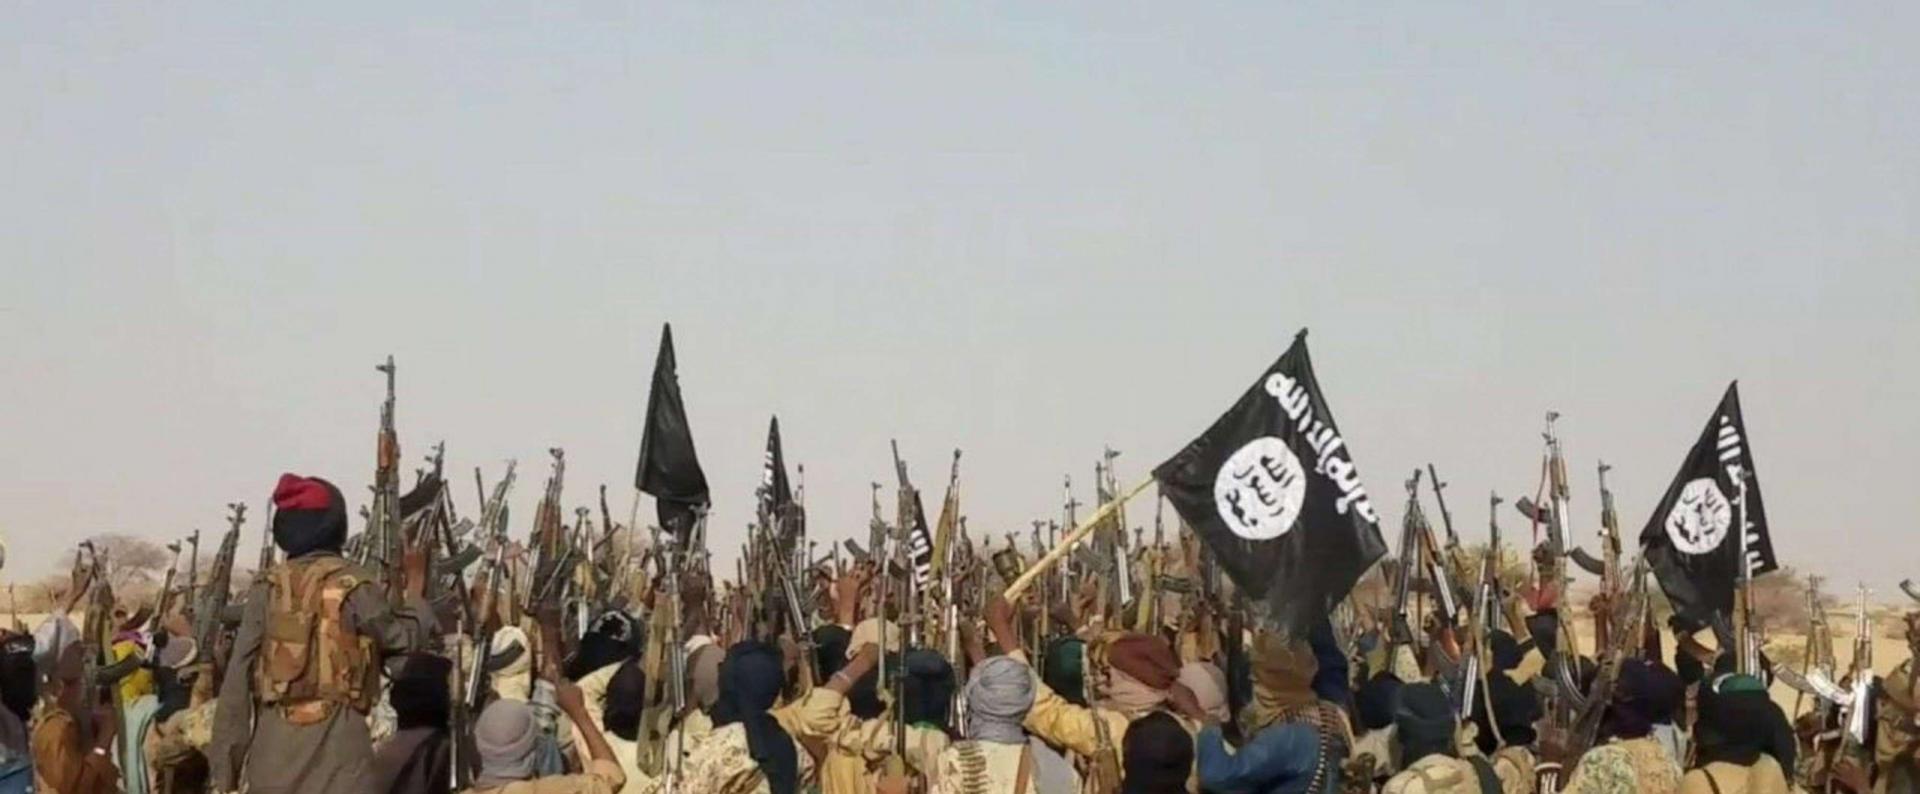 داعش افريقيا يتخلص من زعيم جماعة بوكو حرام وعشرات من قادتها بينما يعمل على استقطاب مقاتليها وعددهم بالآلاف